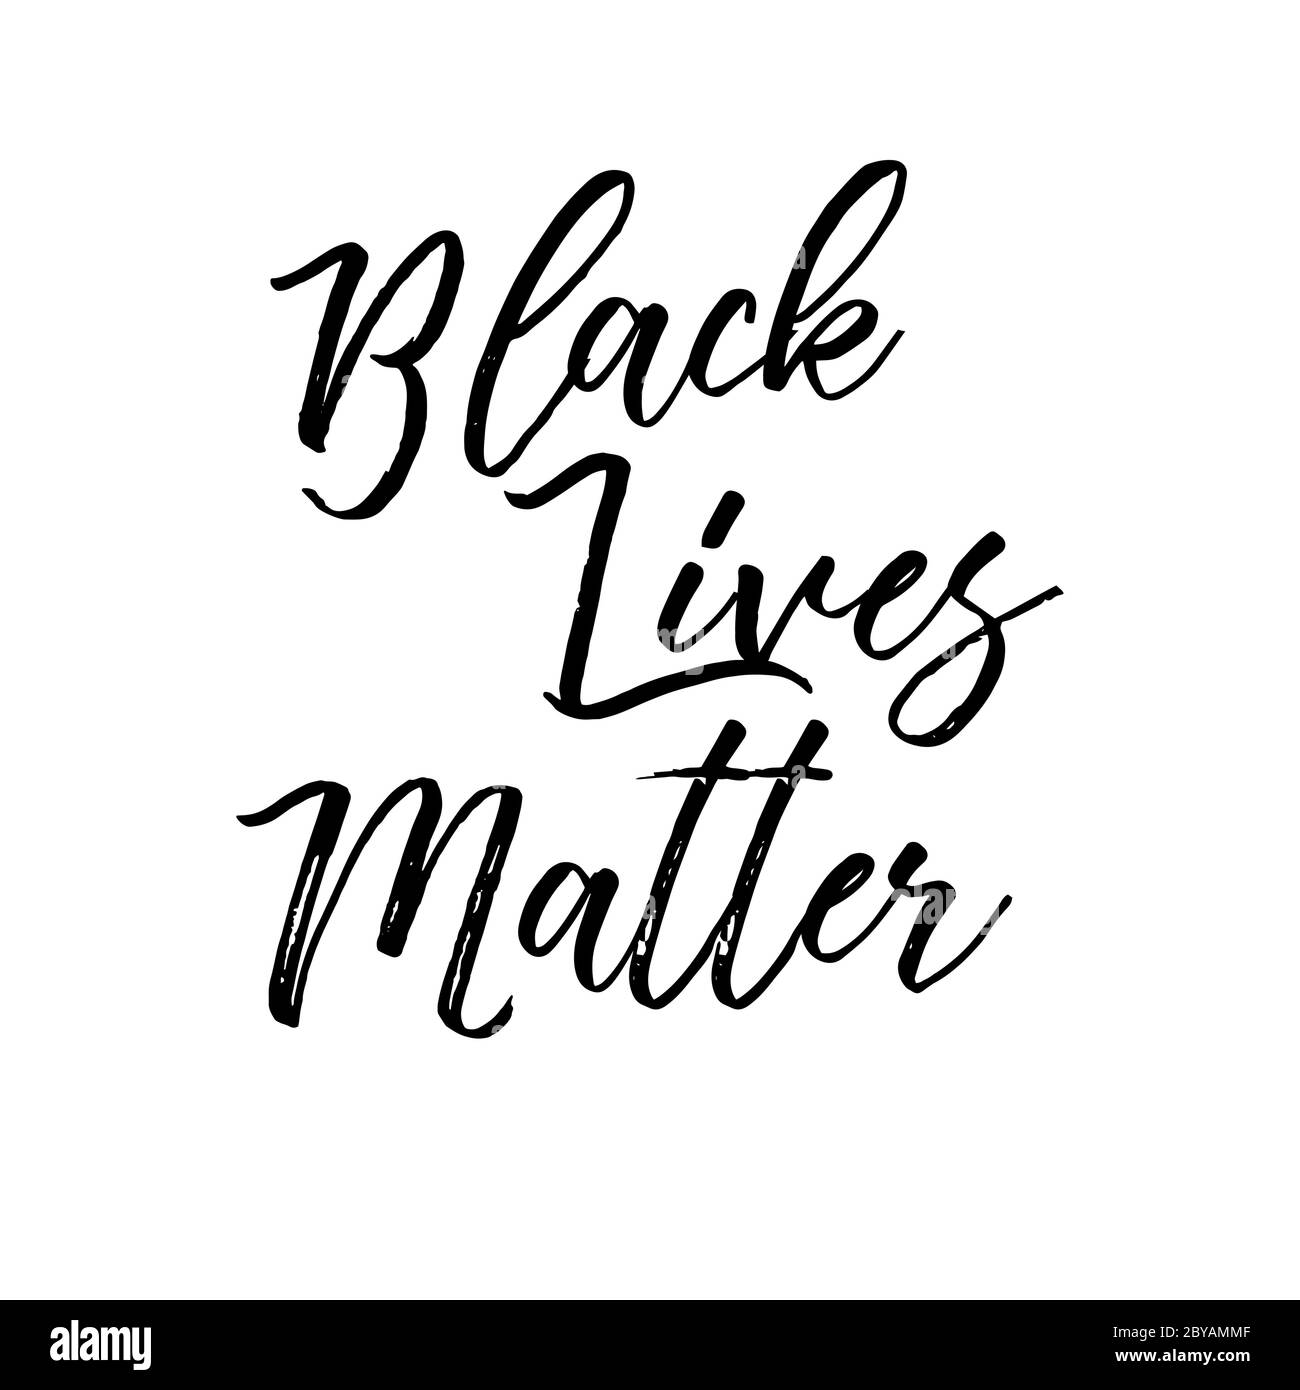 Elementi di disegno con caratteri vettoriali Black Lives Matter Illustrazione Vettoriale